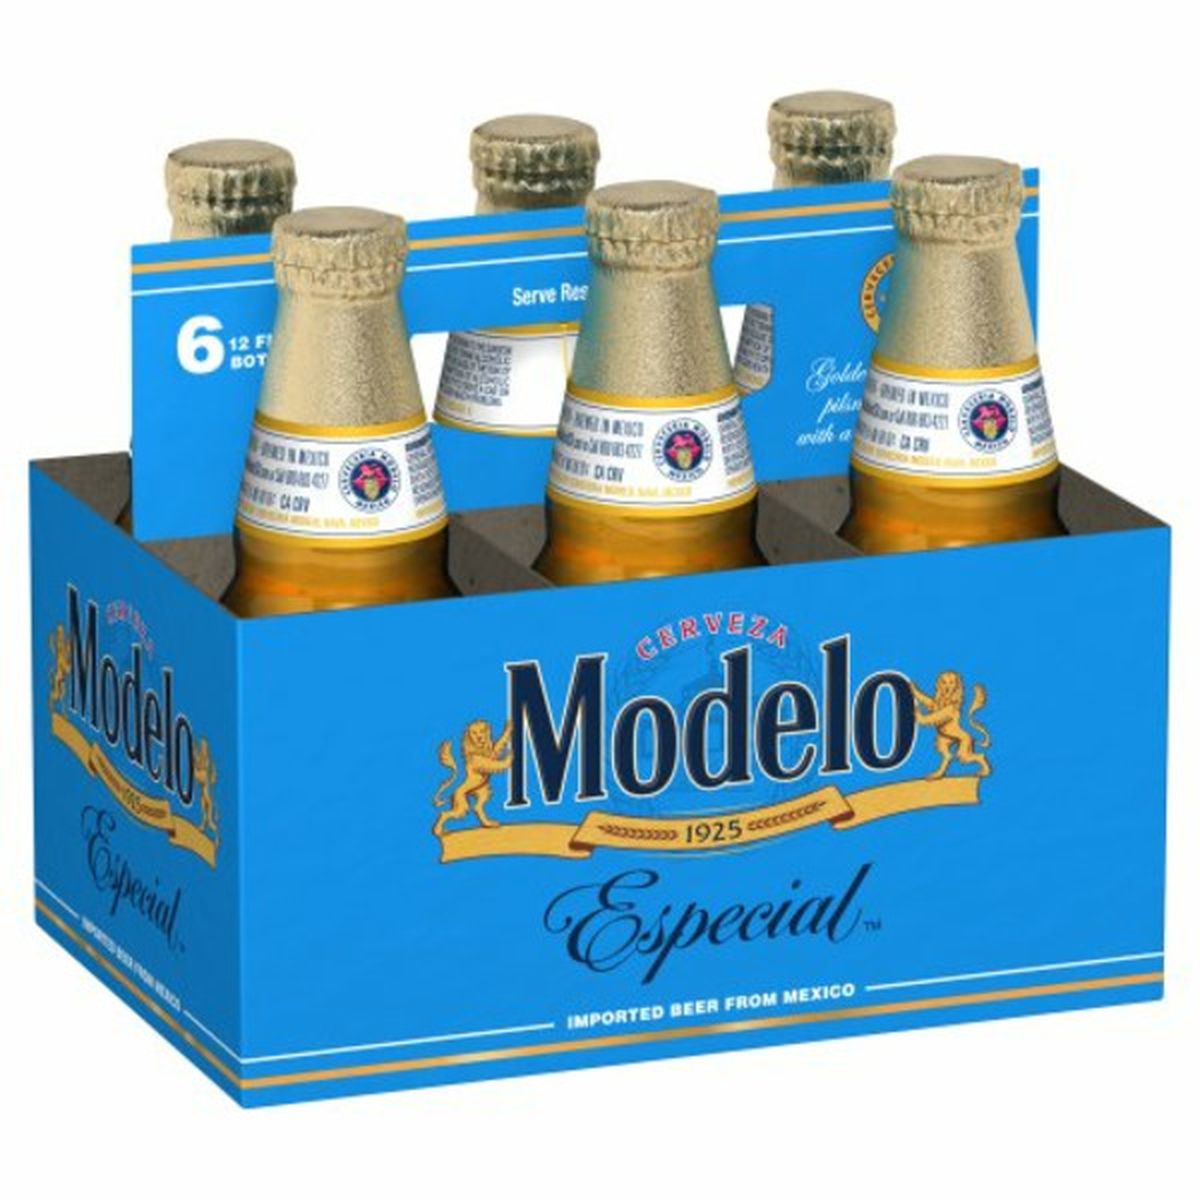 Calories in Modelo Especial Especial  6/12 oz bottles